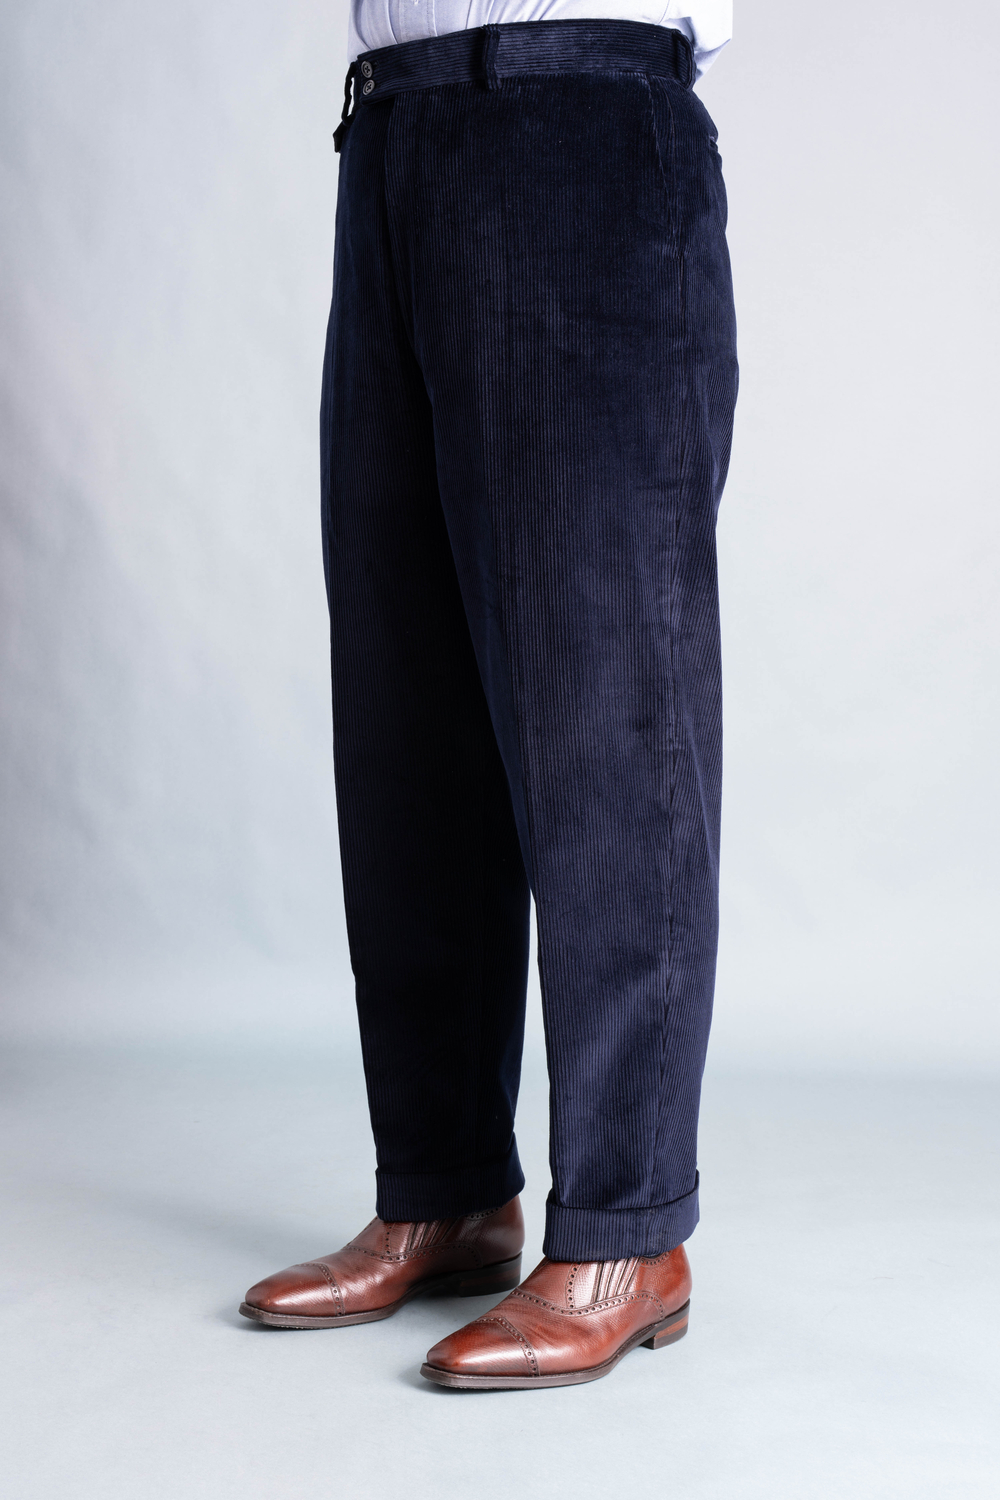 The Best Corduroy Pants for Men in 2023 - InsideHook